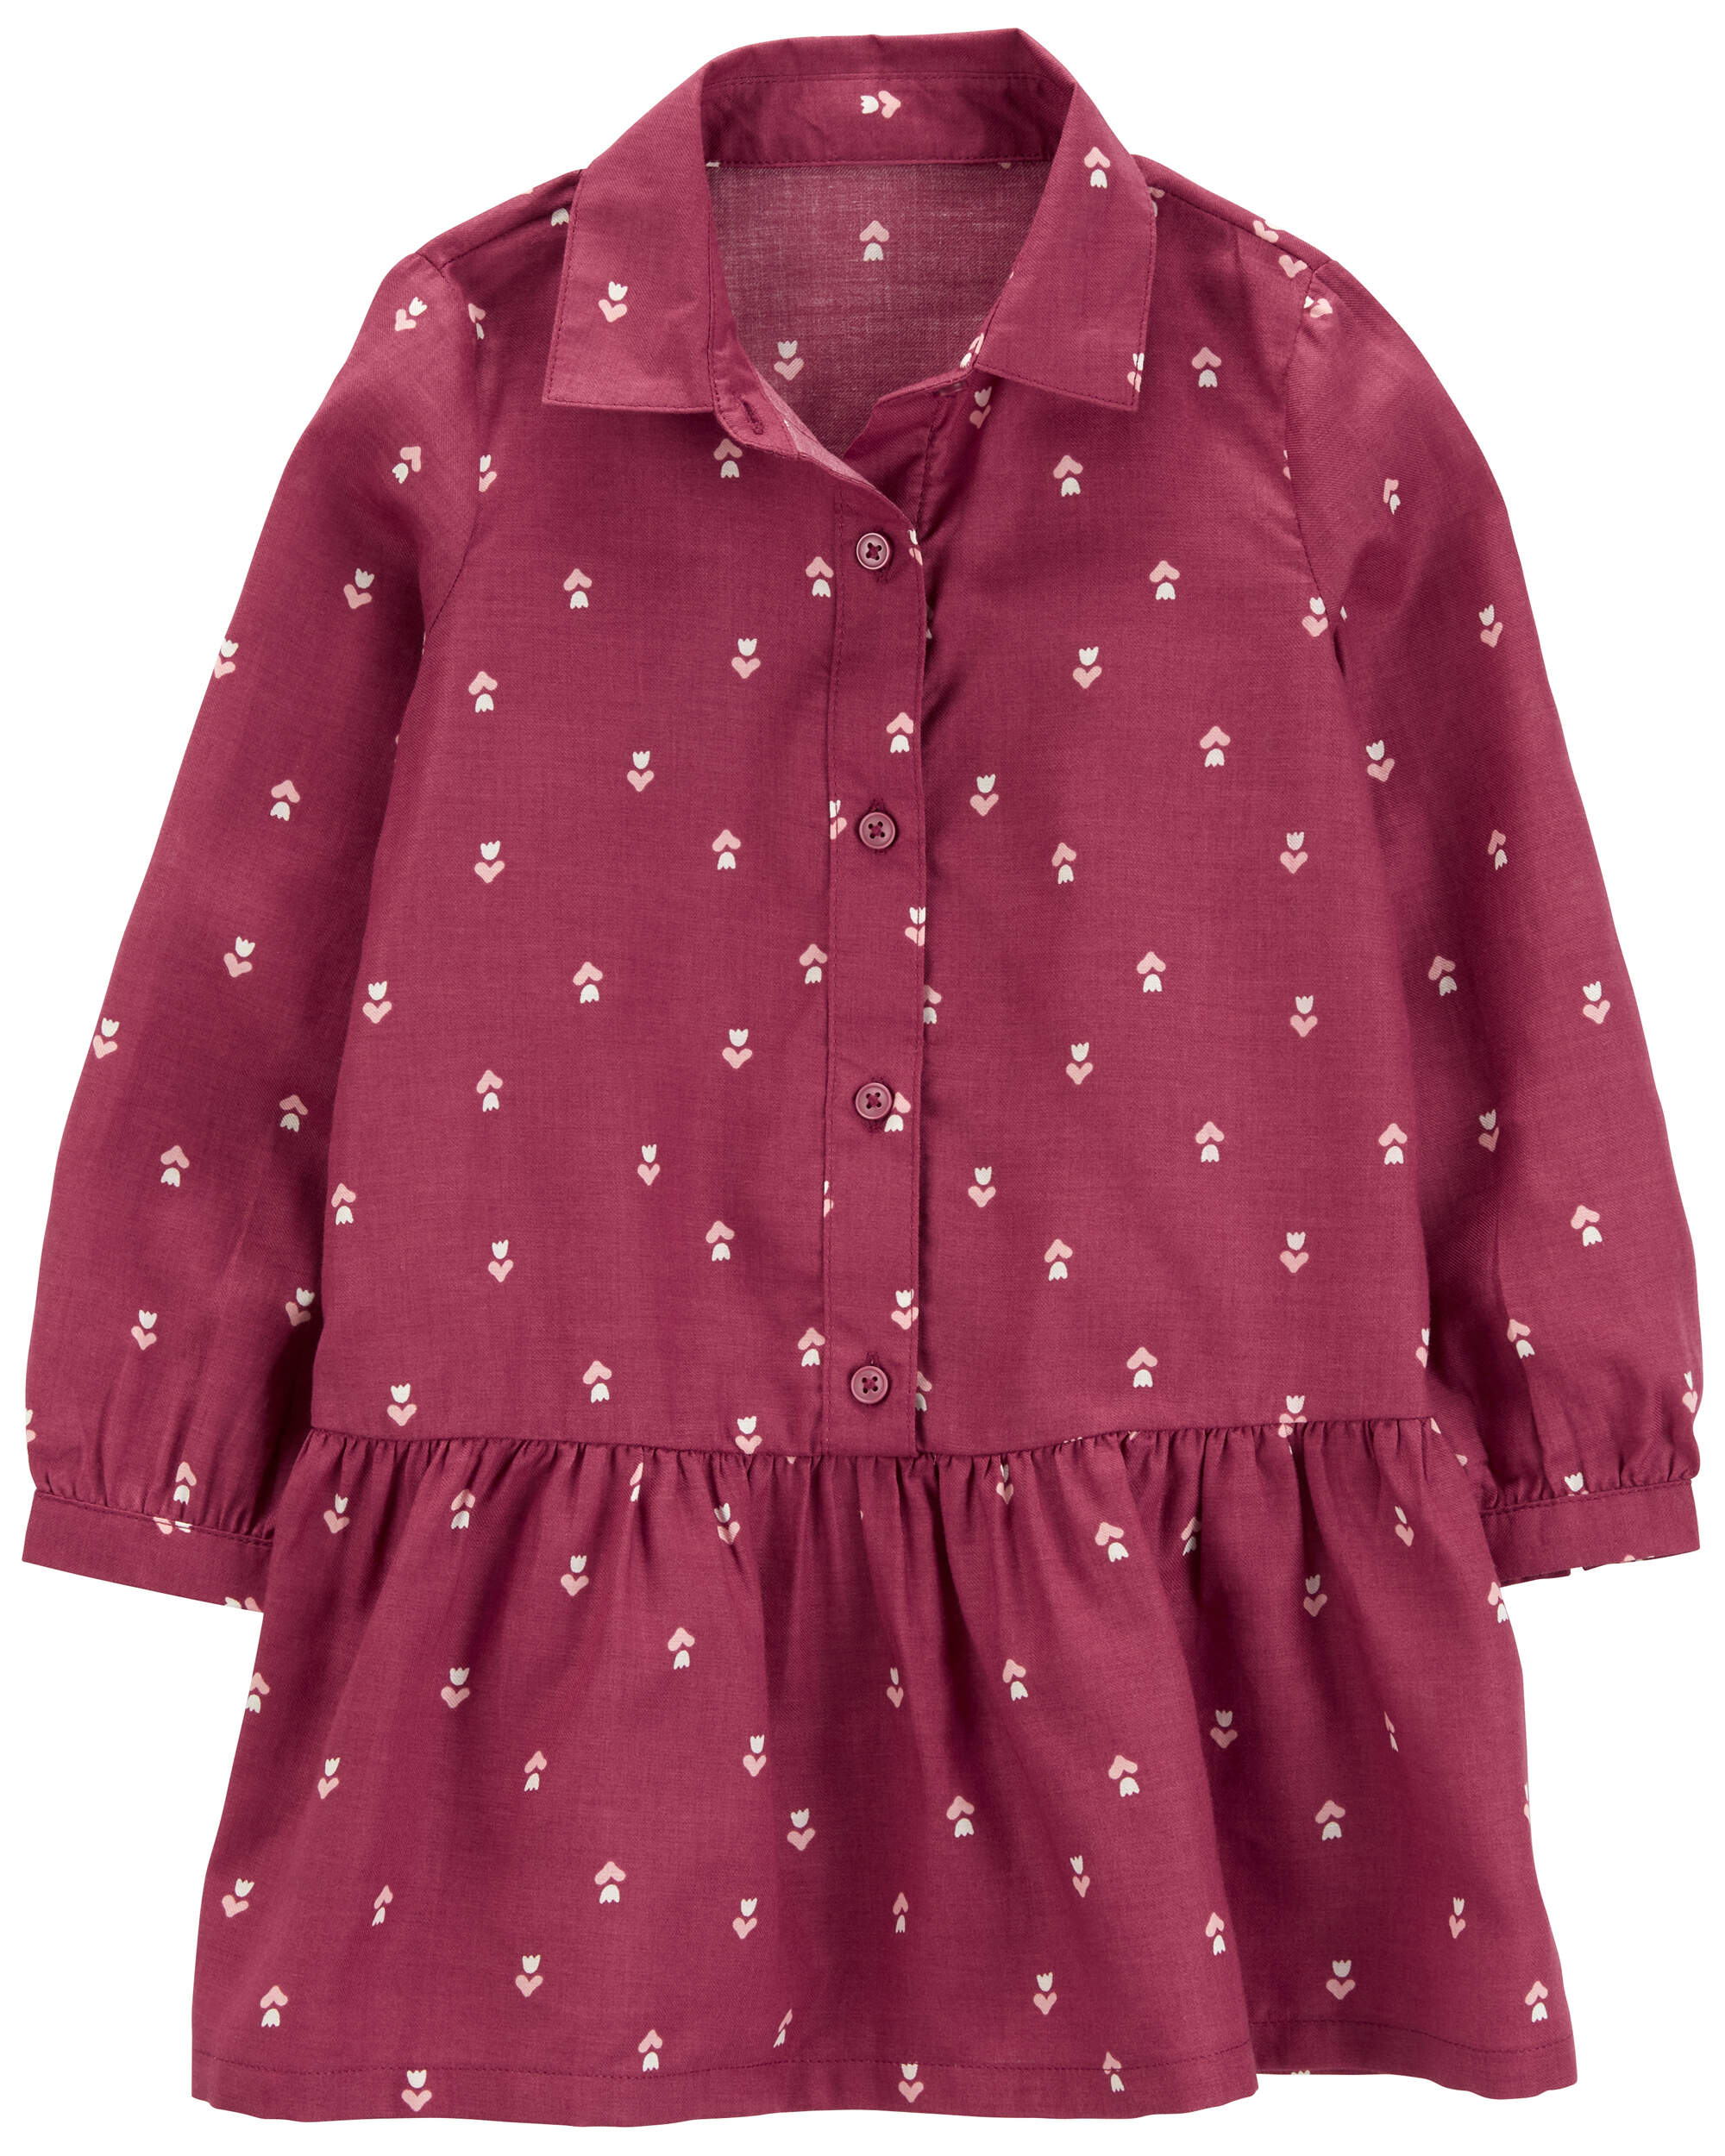 Toddler Long-Sleeve Shirt Peplum Dress